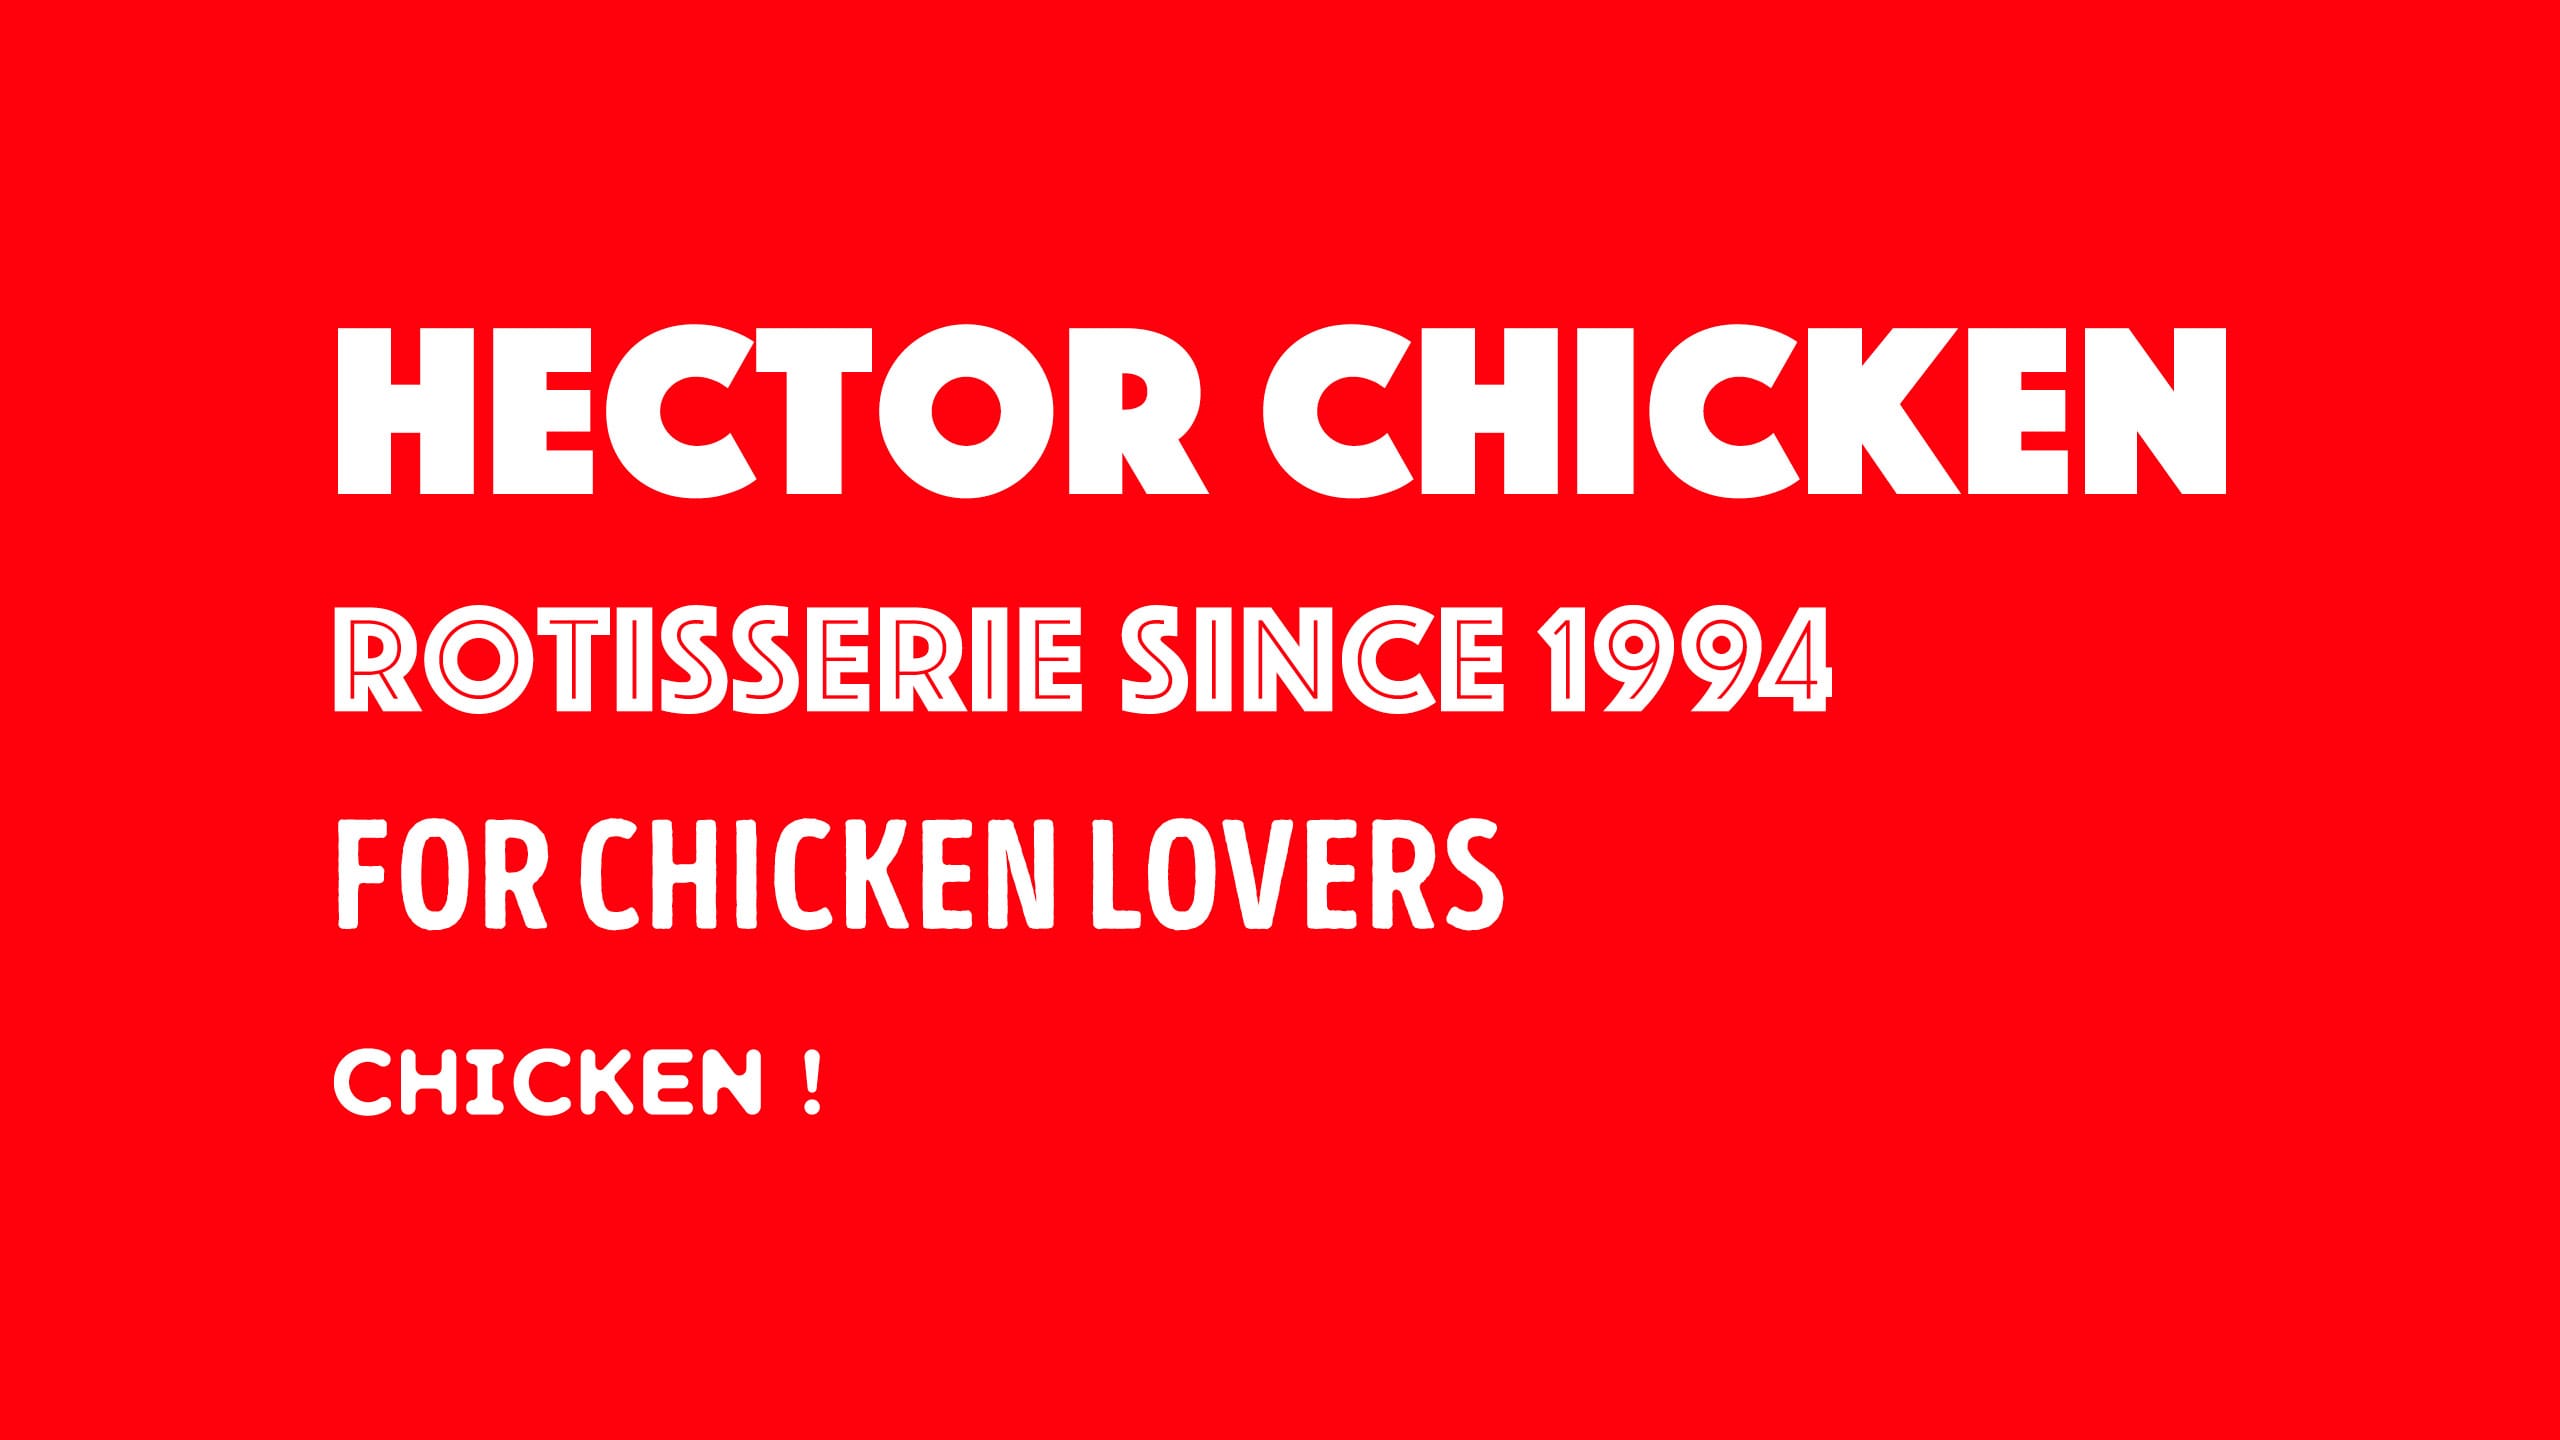 Hector-chicken-branding-typography